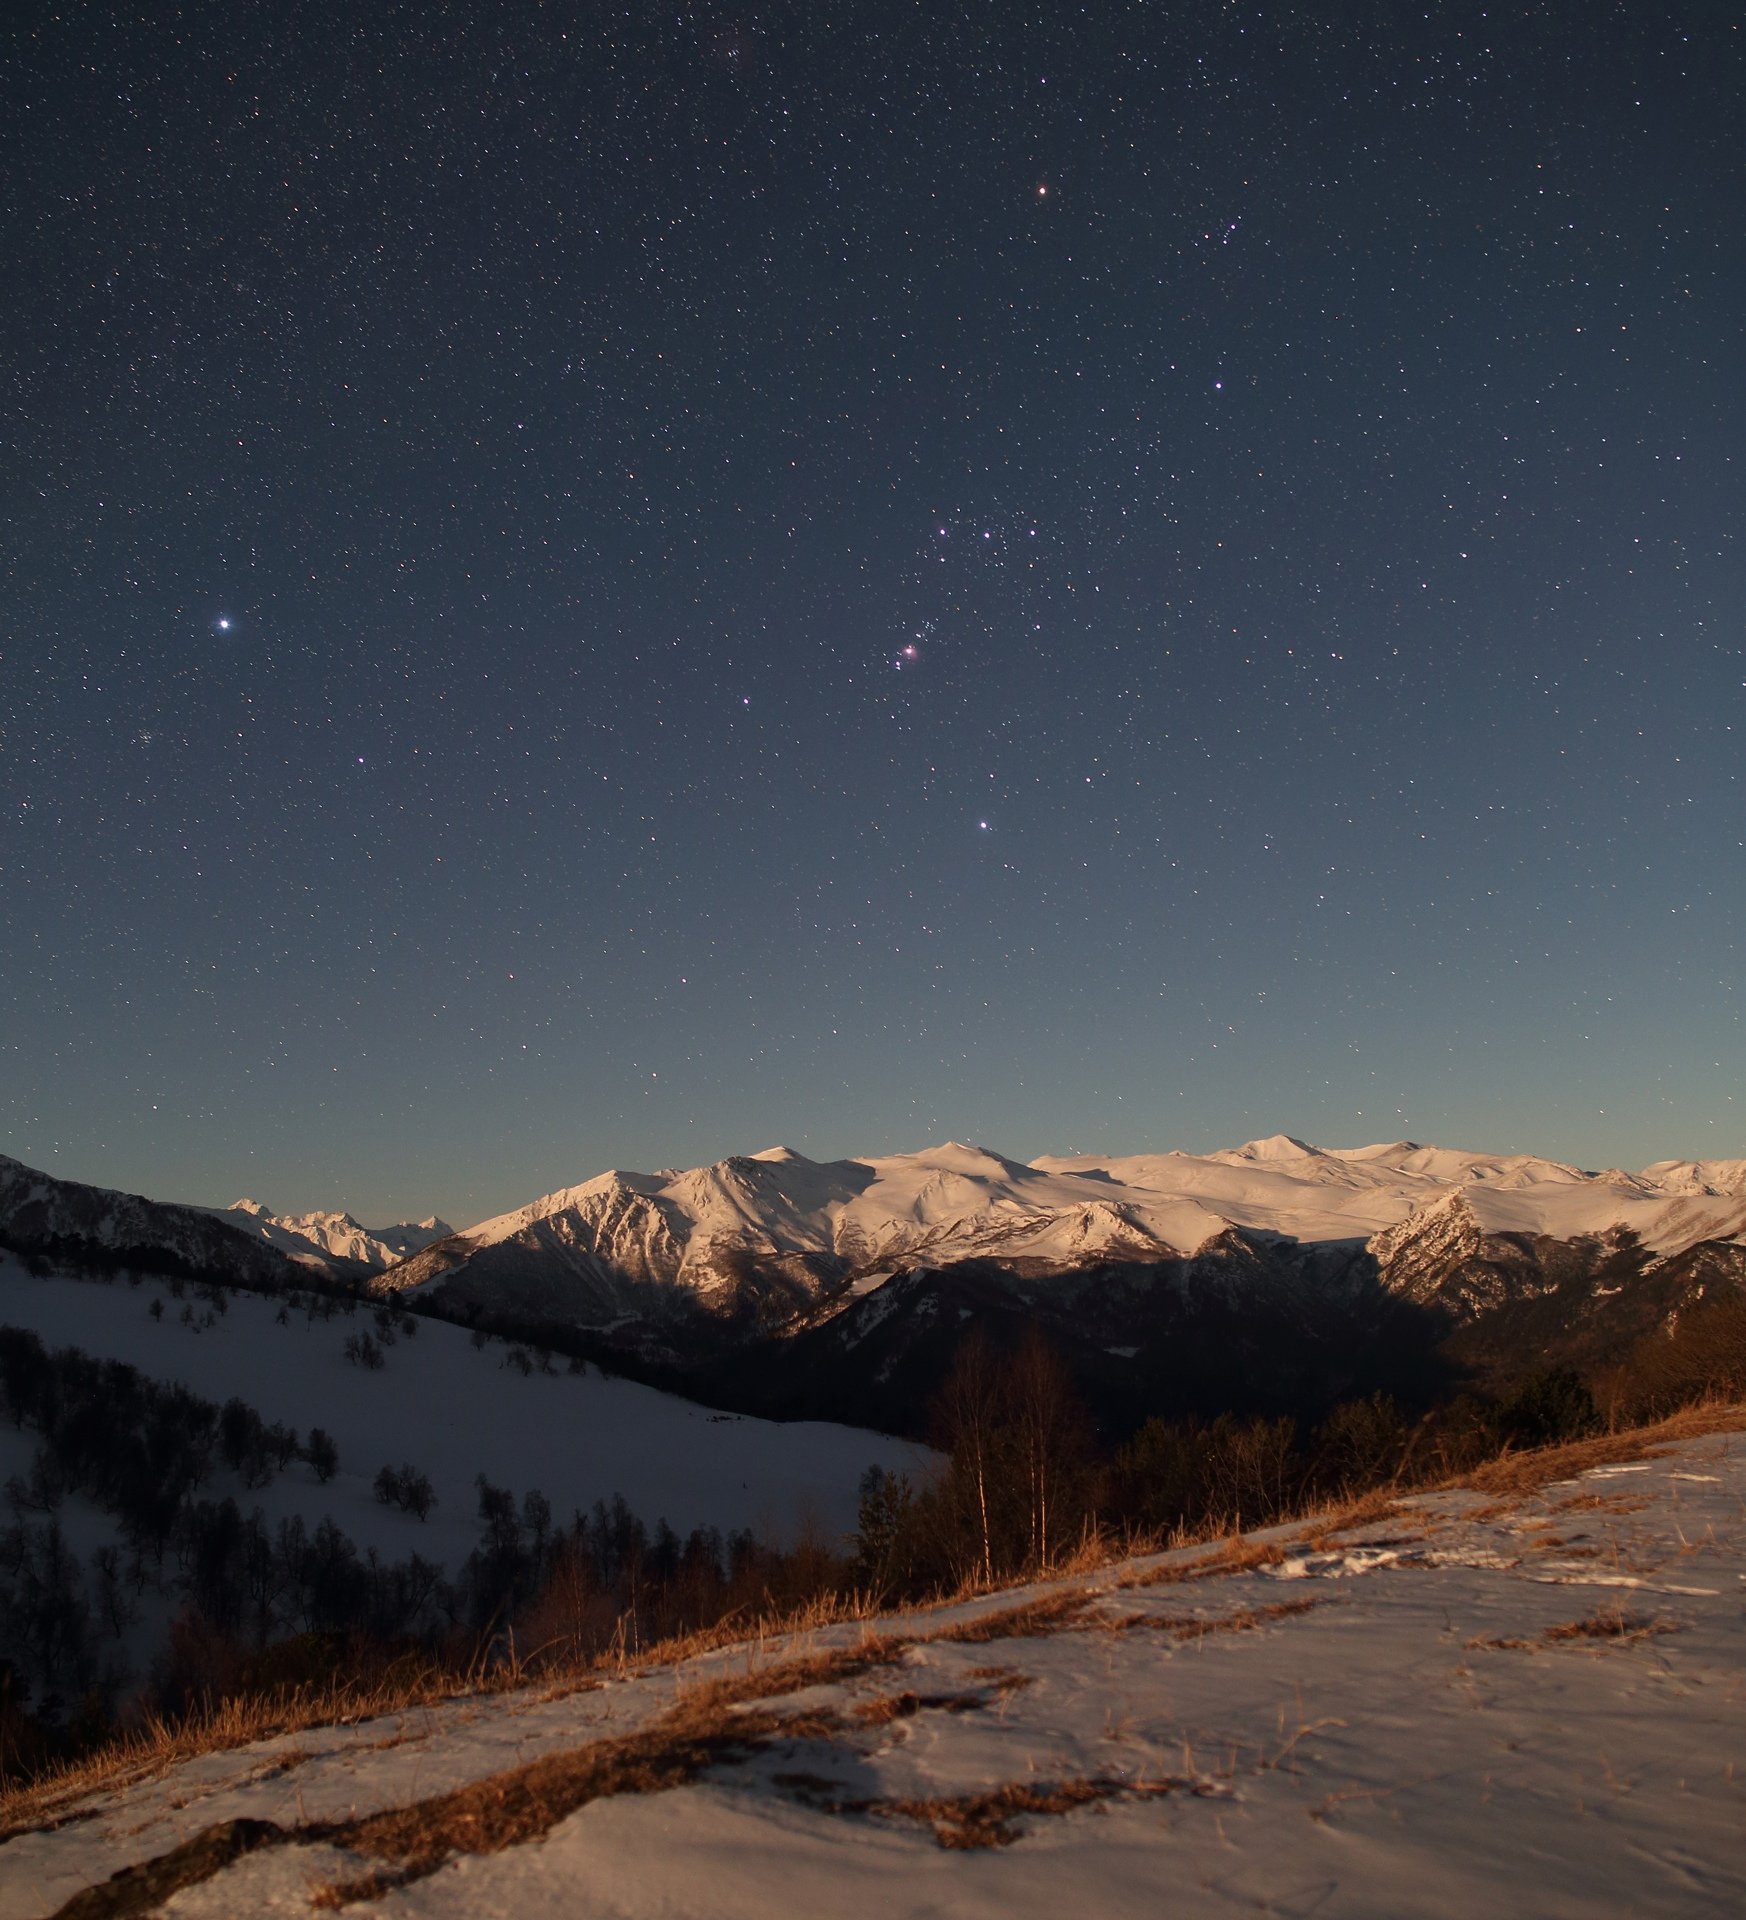 ночь бта обсерватория ночной пейзаж астрофотография звезды созвездия орион облака, Михаил Рева